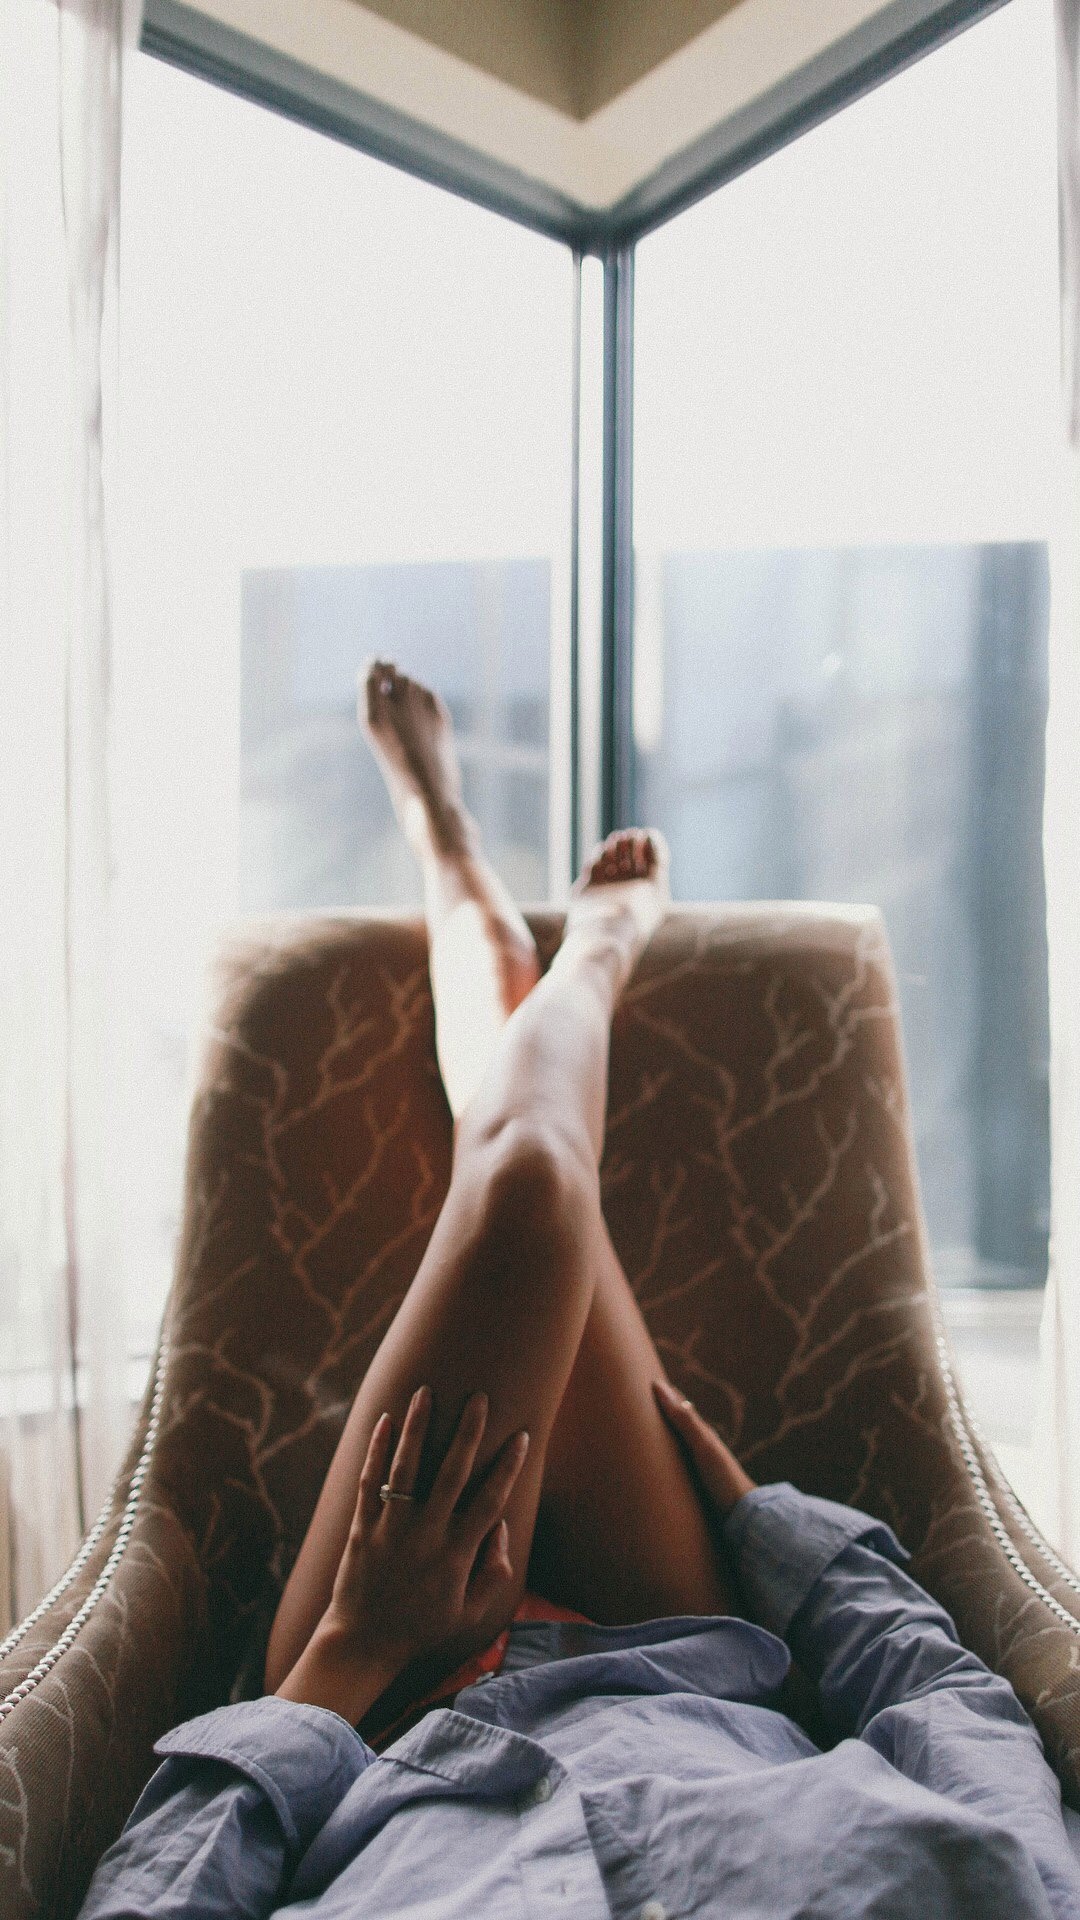 沙发上的翘着的性感美腿高清手机壁纸